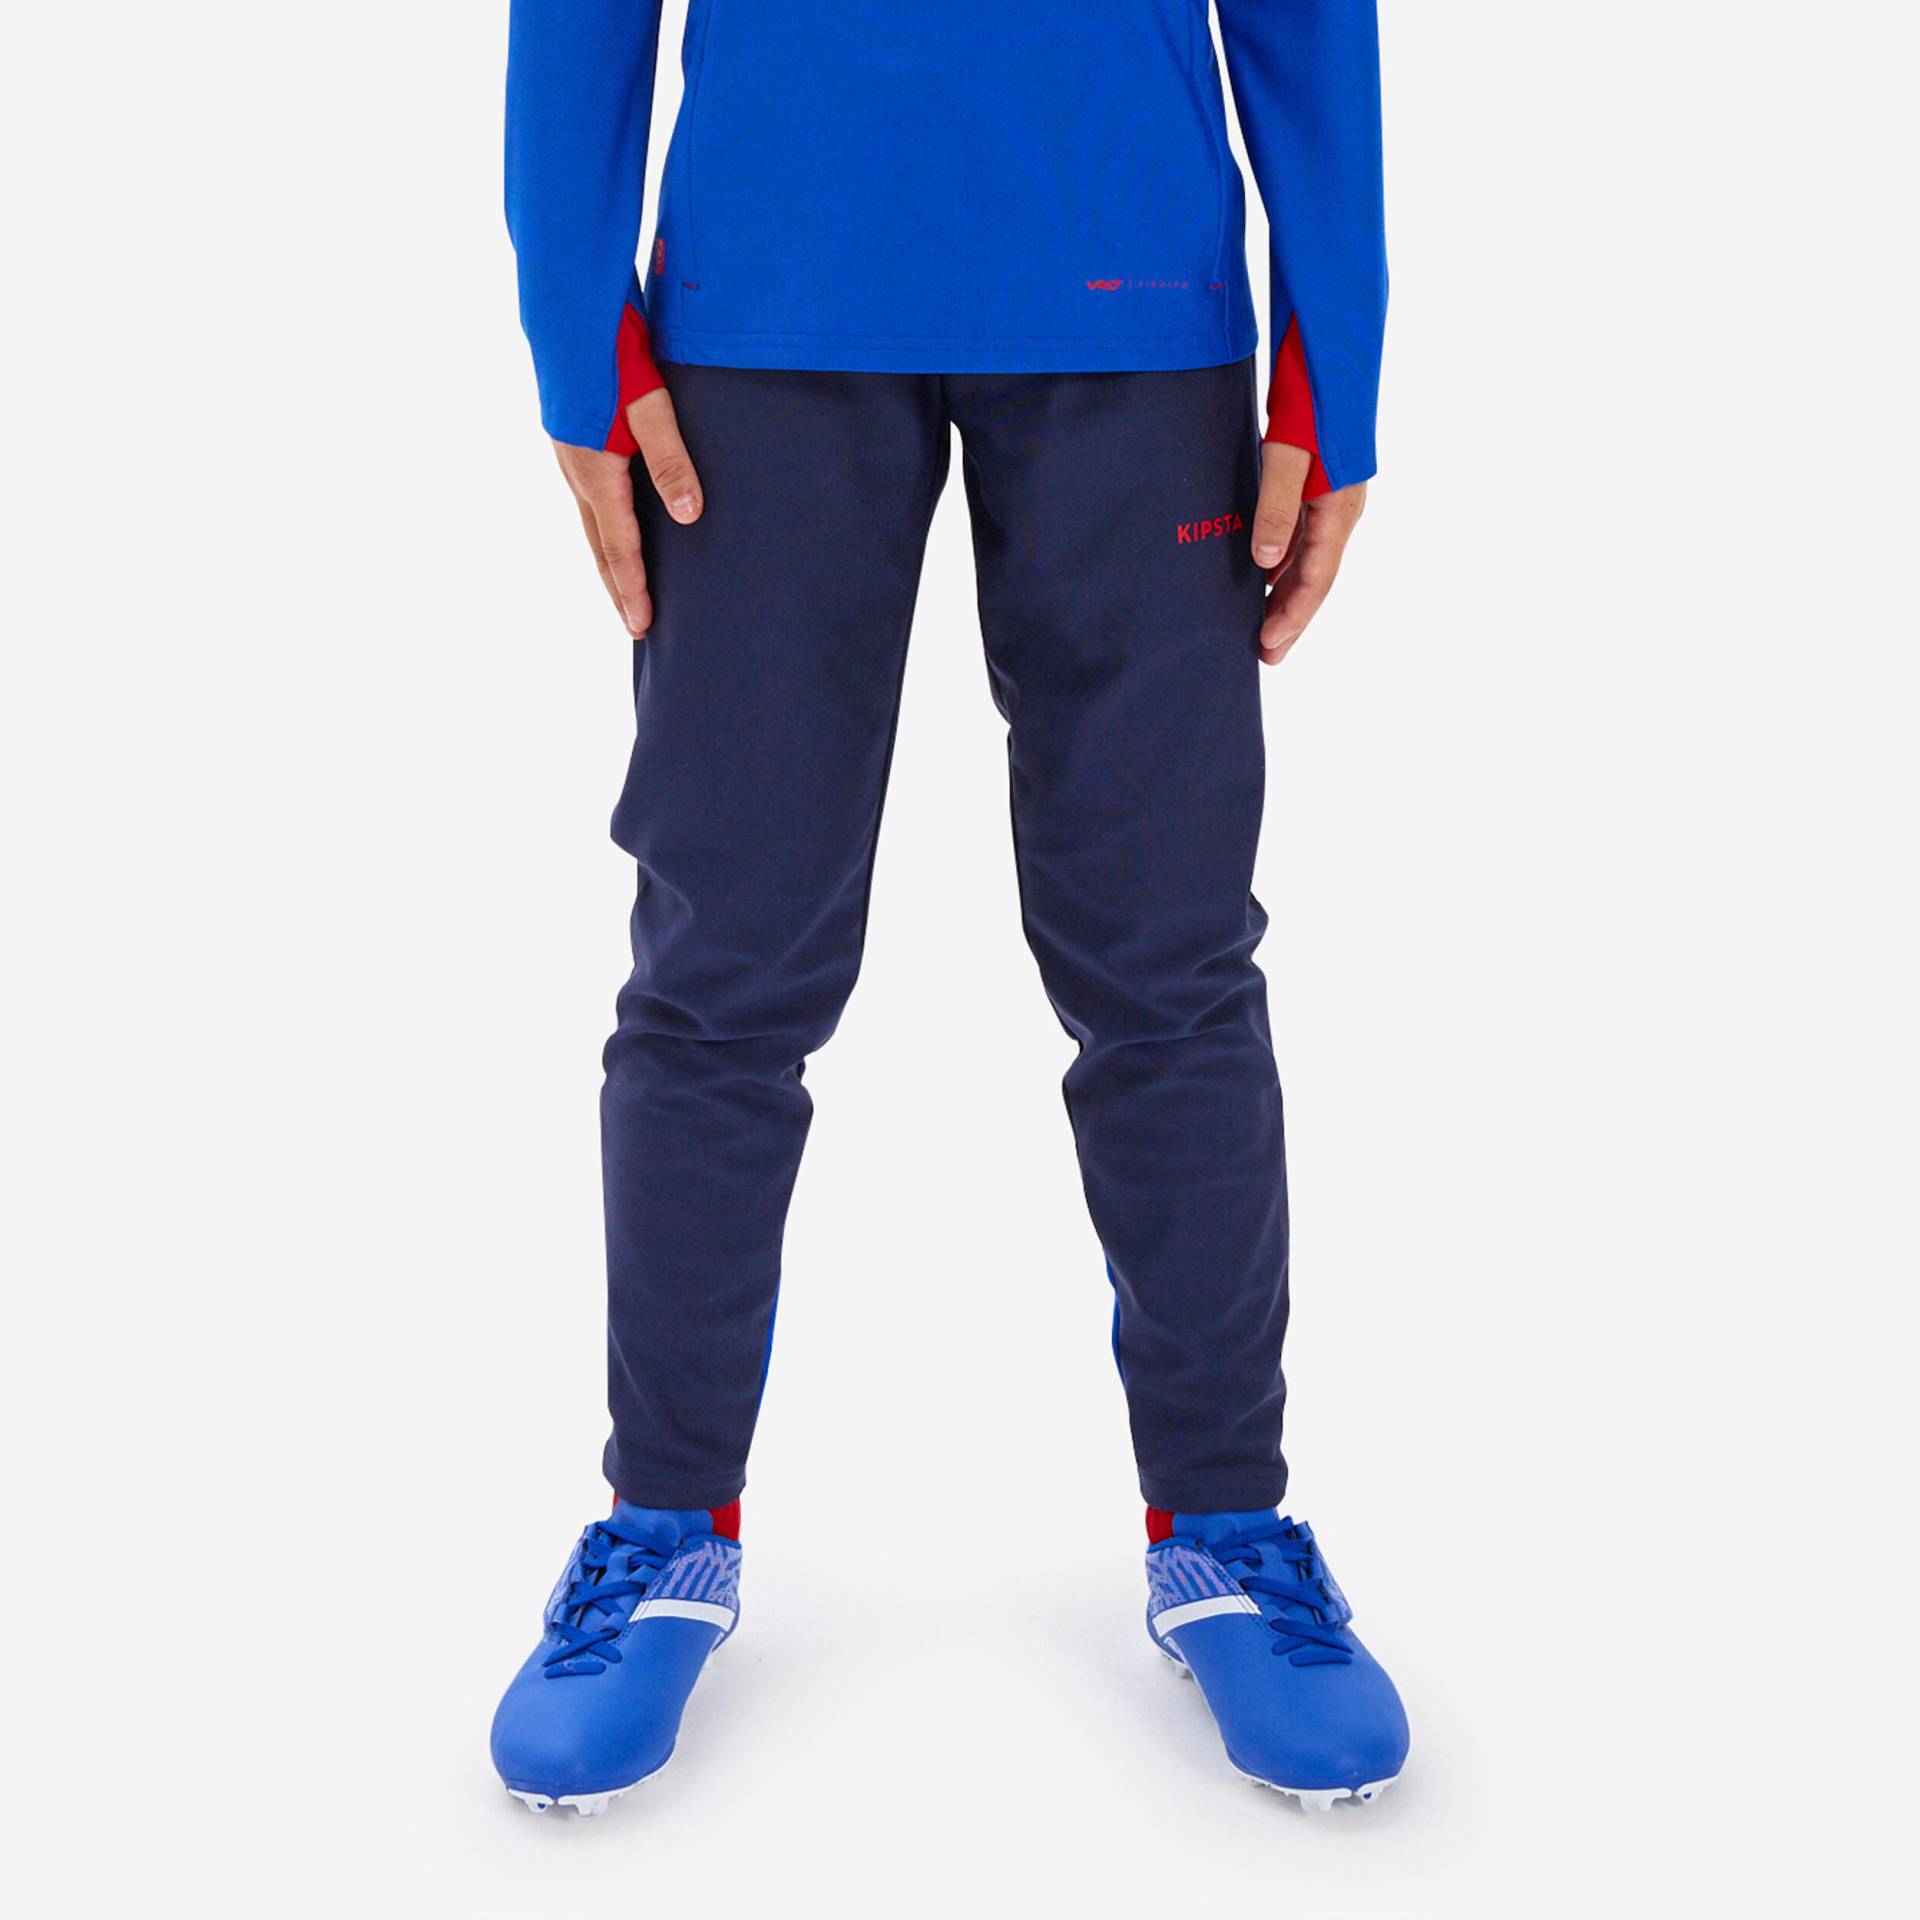 Kinder Fussball Sweatshirt mit Reissverschluss - Viralto blau/neonorange von KIPSTA